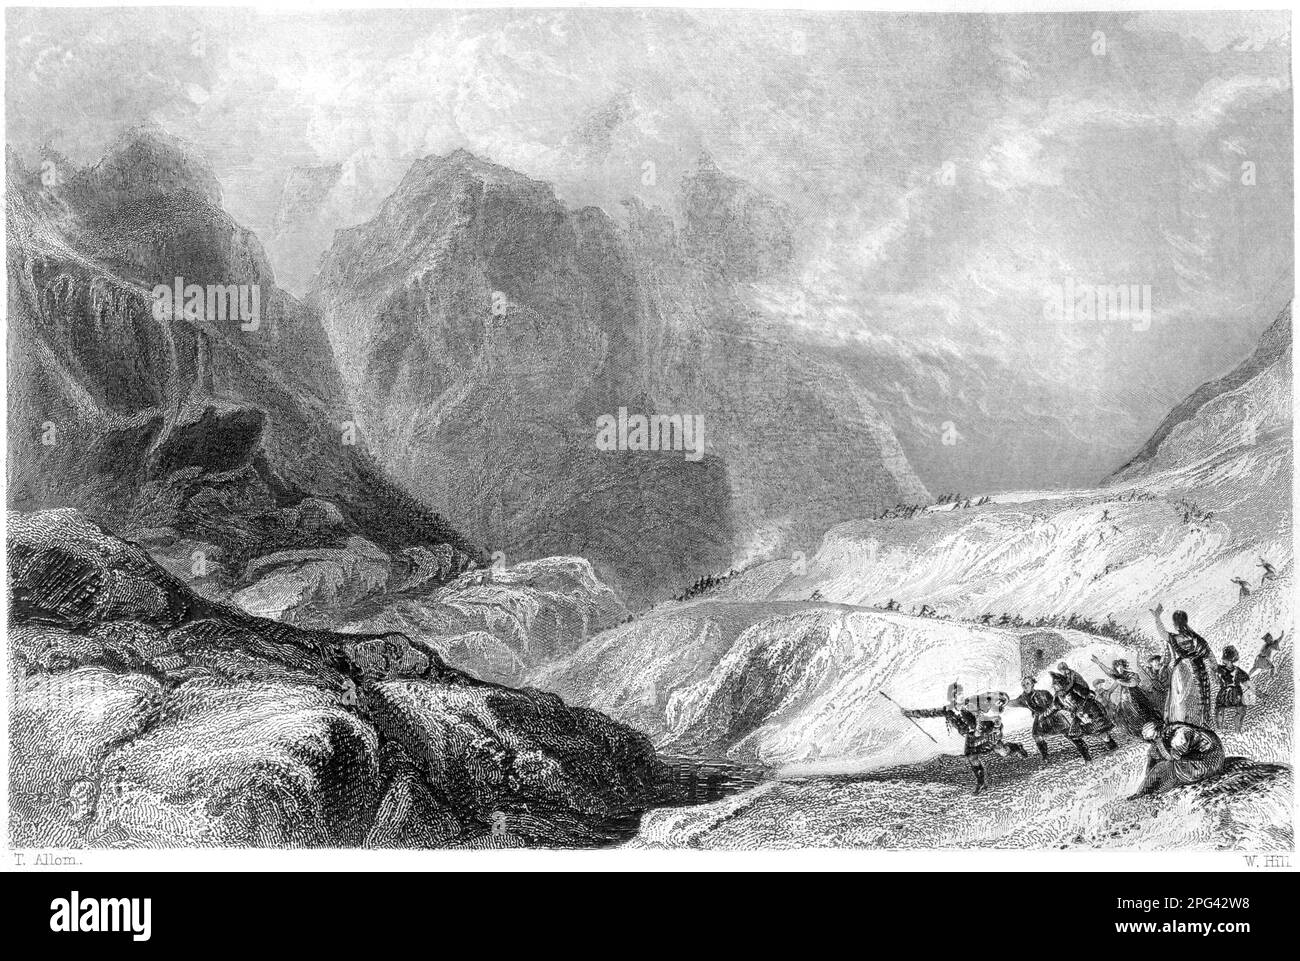 Eine Gravur des Eastern Pass of Glencoe, Argyleshire, Schottland, Großbritannien, gescannt mit hoher Auflösung aus einem 1840 gedruckten Buch. Stockfoto